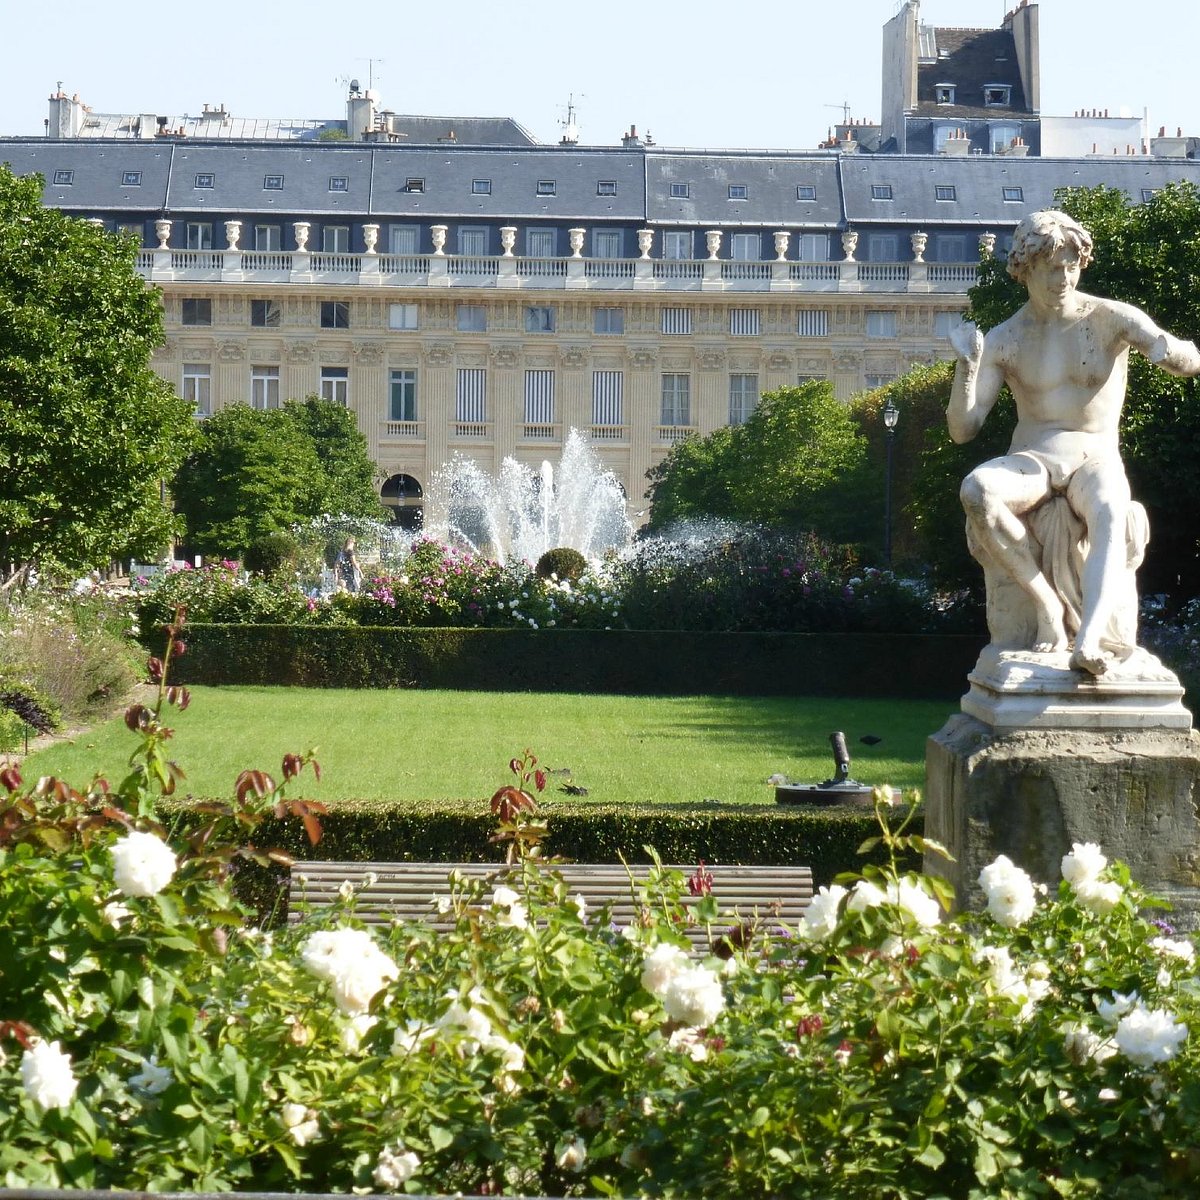 https://dynamic-media-cdn.tripadvisor.com/media/photo-o/04/7c/fc/79/jardin-du-palais-royal.jpg?w=1200&h=1200&s=1